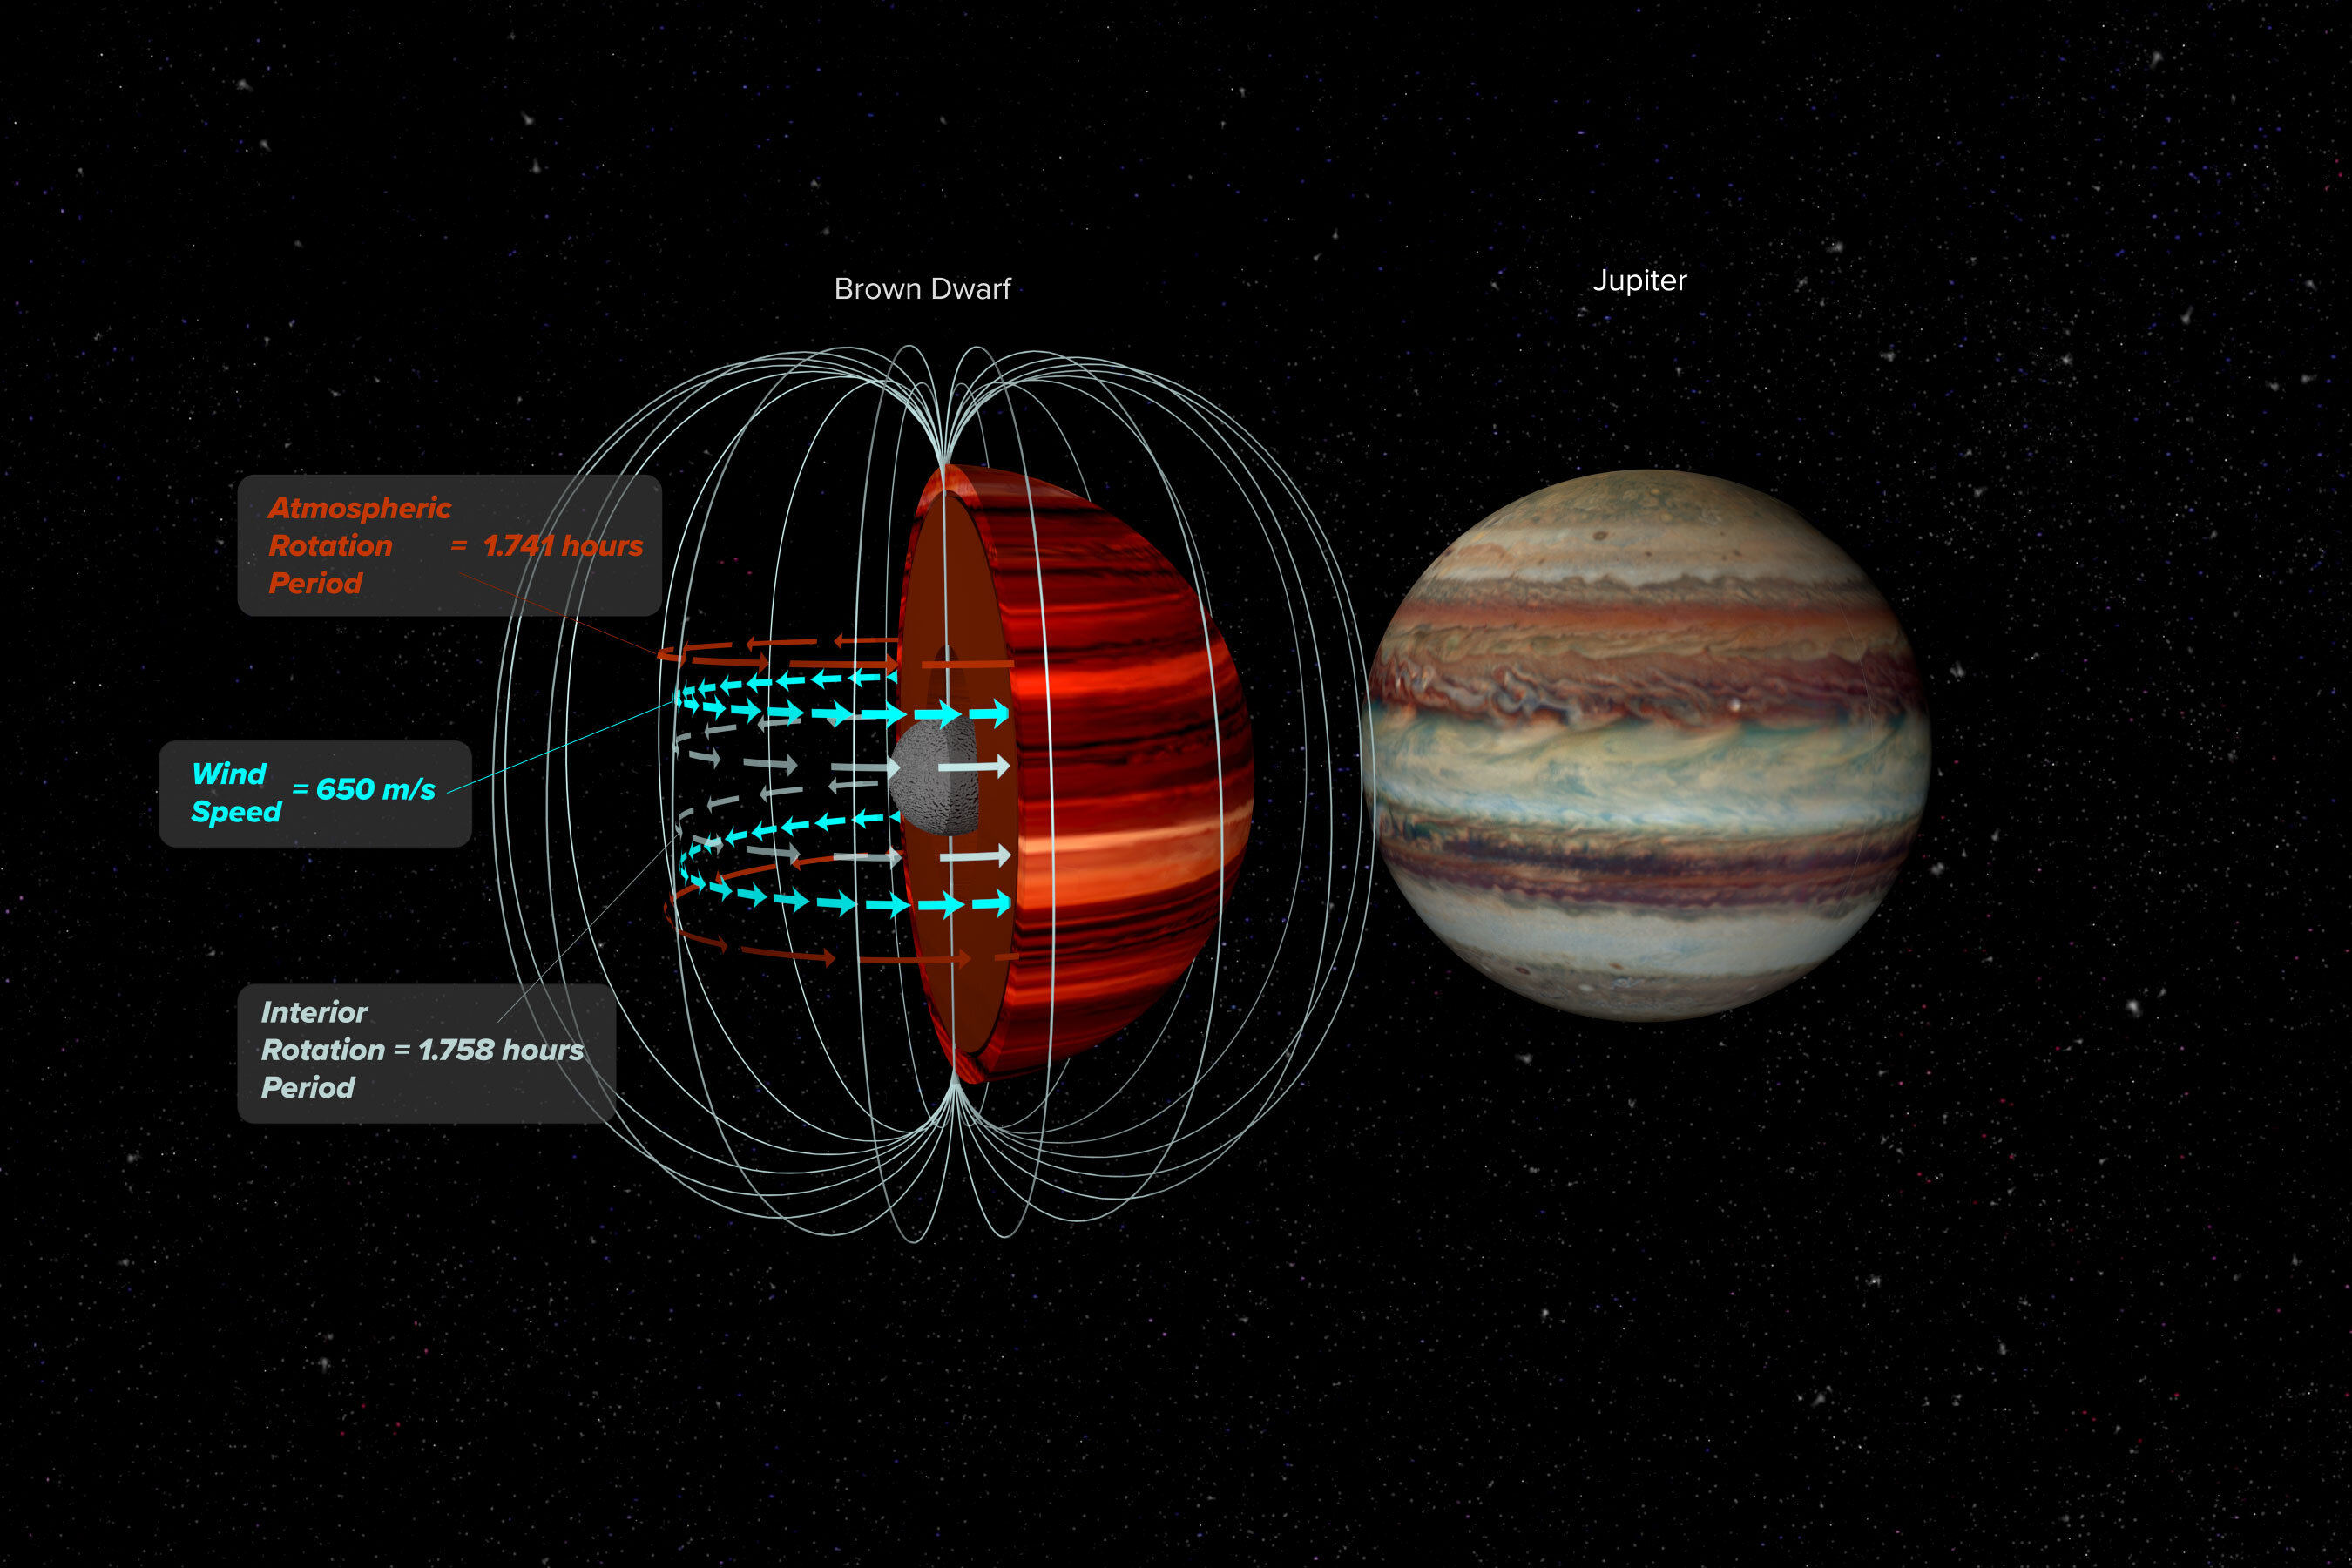 Links Brauner Zwerg und rechts Jupiter. Künstlerische Darstellung eines Magnetfeldes und die obersten Atmosphäre-Schichten eines Braunen Zwerges. Credit: Bill Saxton, NRAO/AUI/NSF